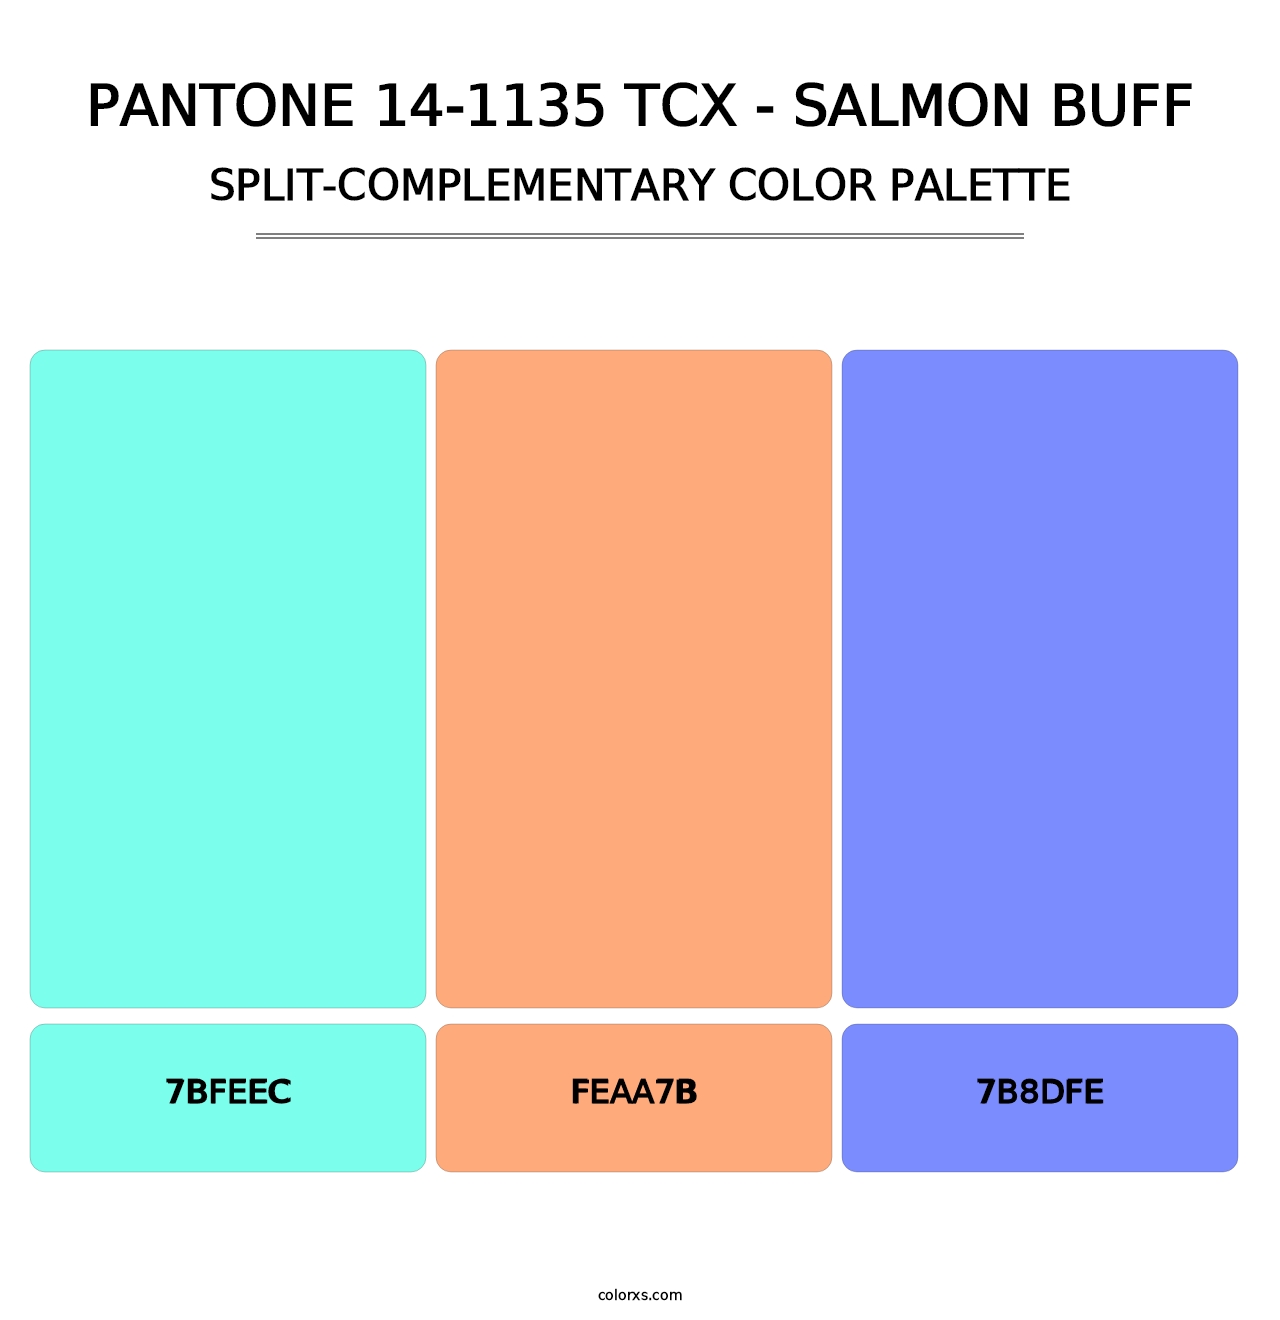 PANTONE 14-1135 TCX - Salmon Buff - Split-Complementary Color Palette